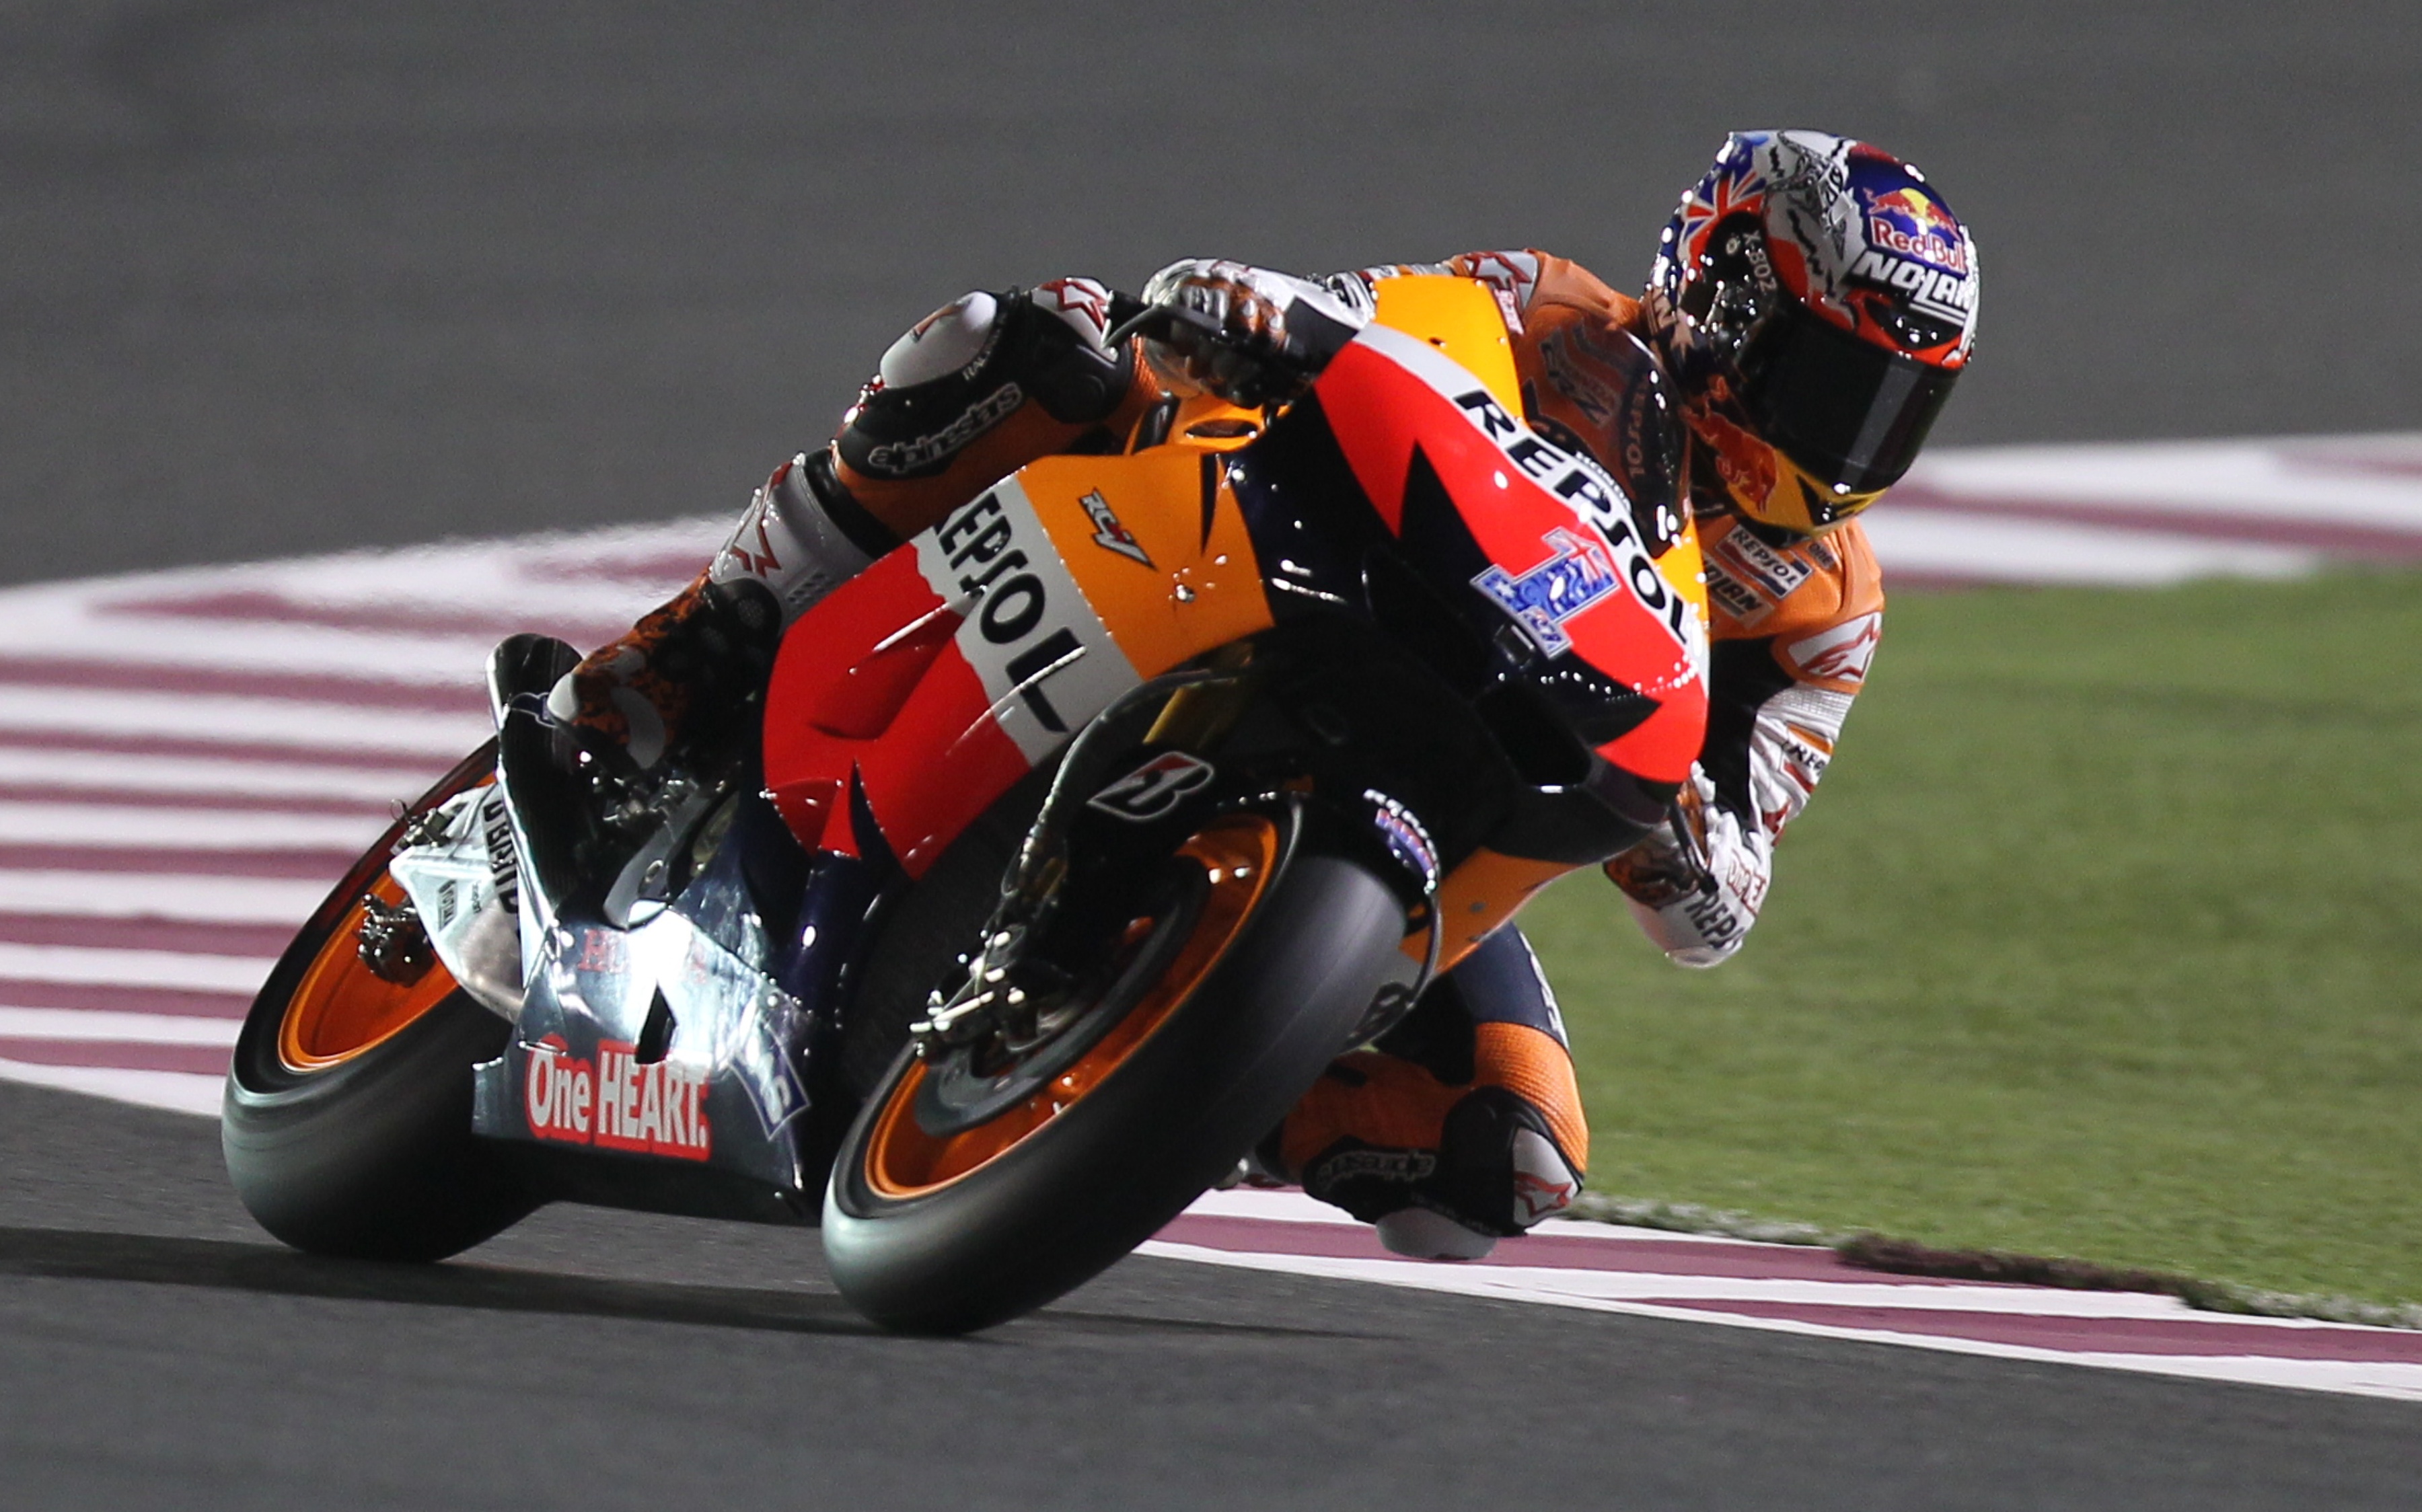 Risultati prove libere MotoGP Qatar 5 aprile 2012: Stoner vola, Rossi decimo 